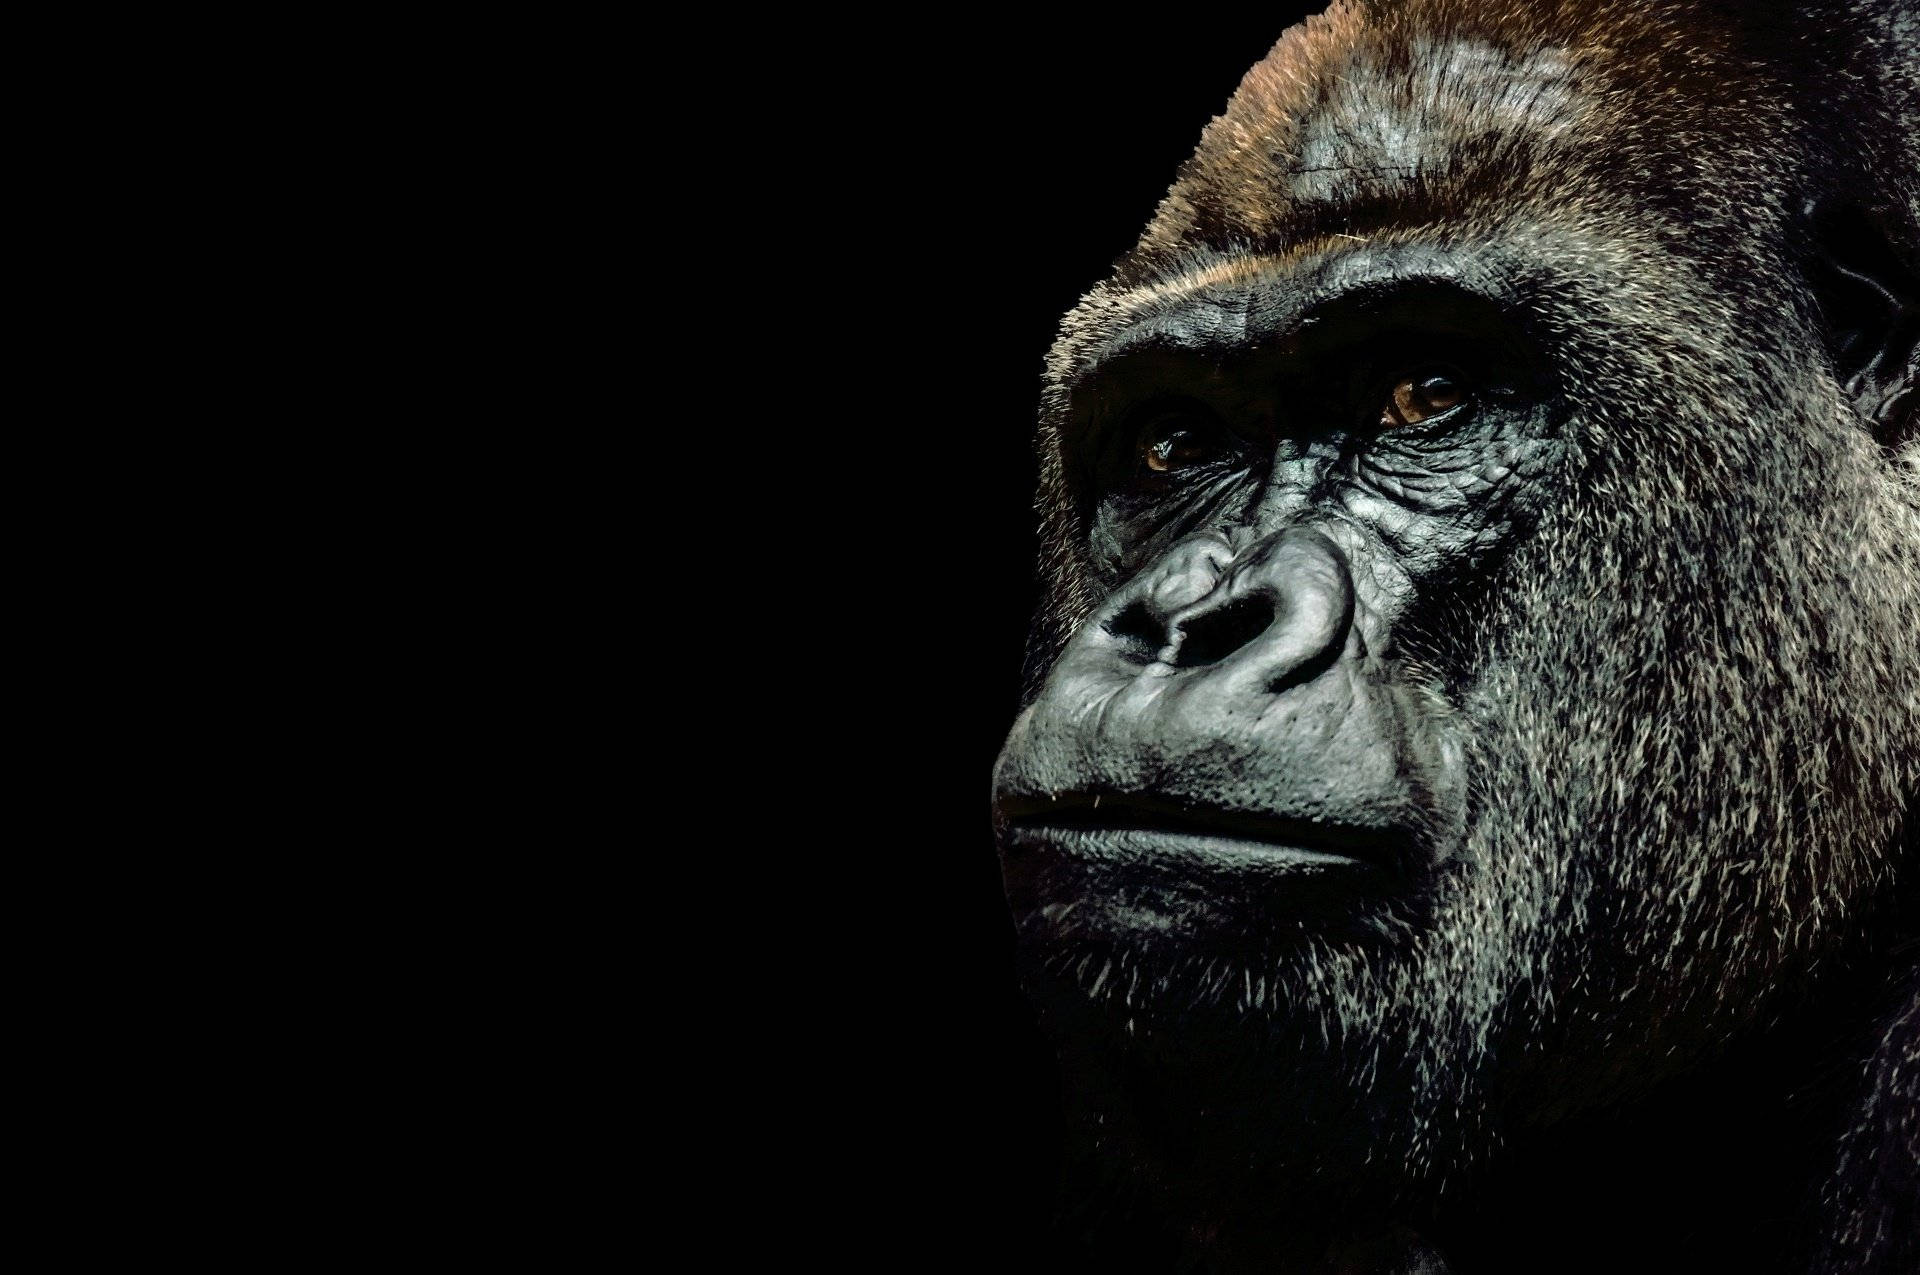 Fondode Pantalla De Escritorio: Un Gorila Sentado En La Naturaleza. Fondo de pantalla